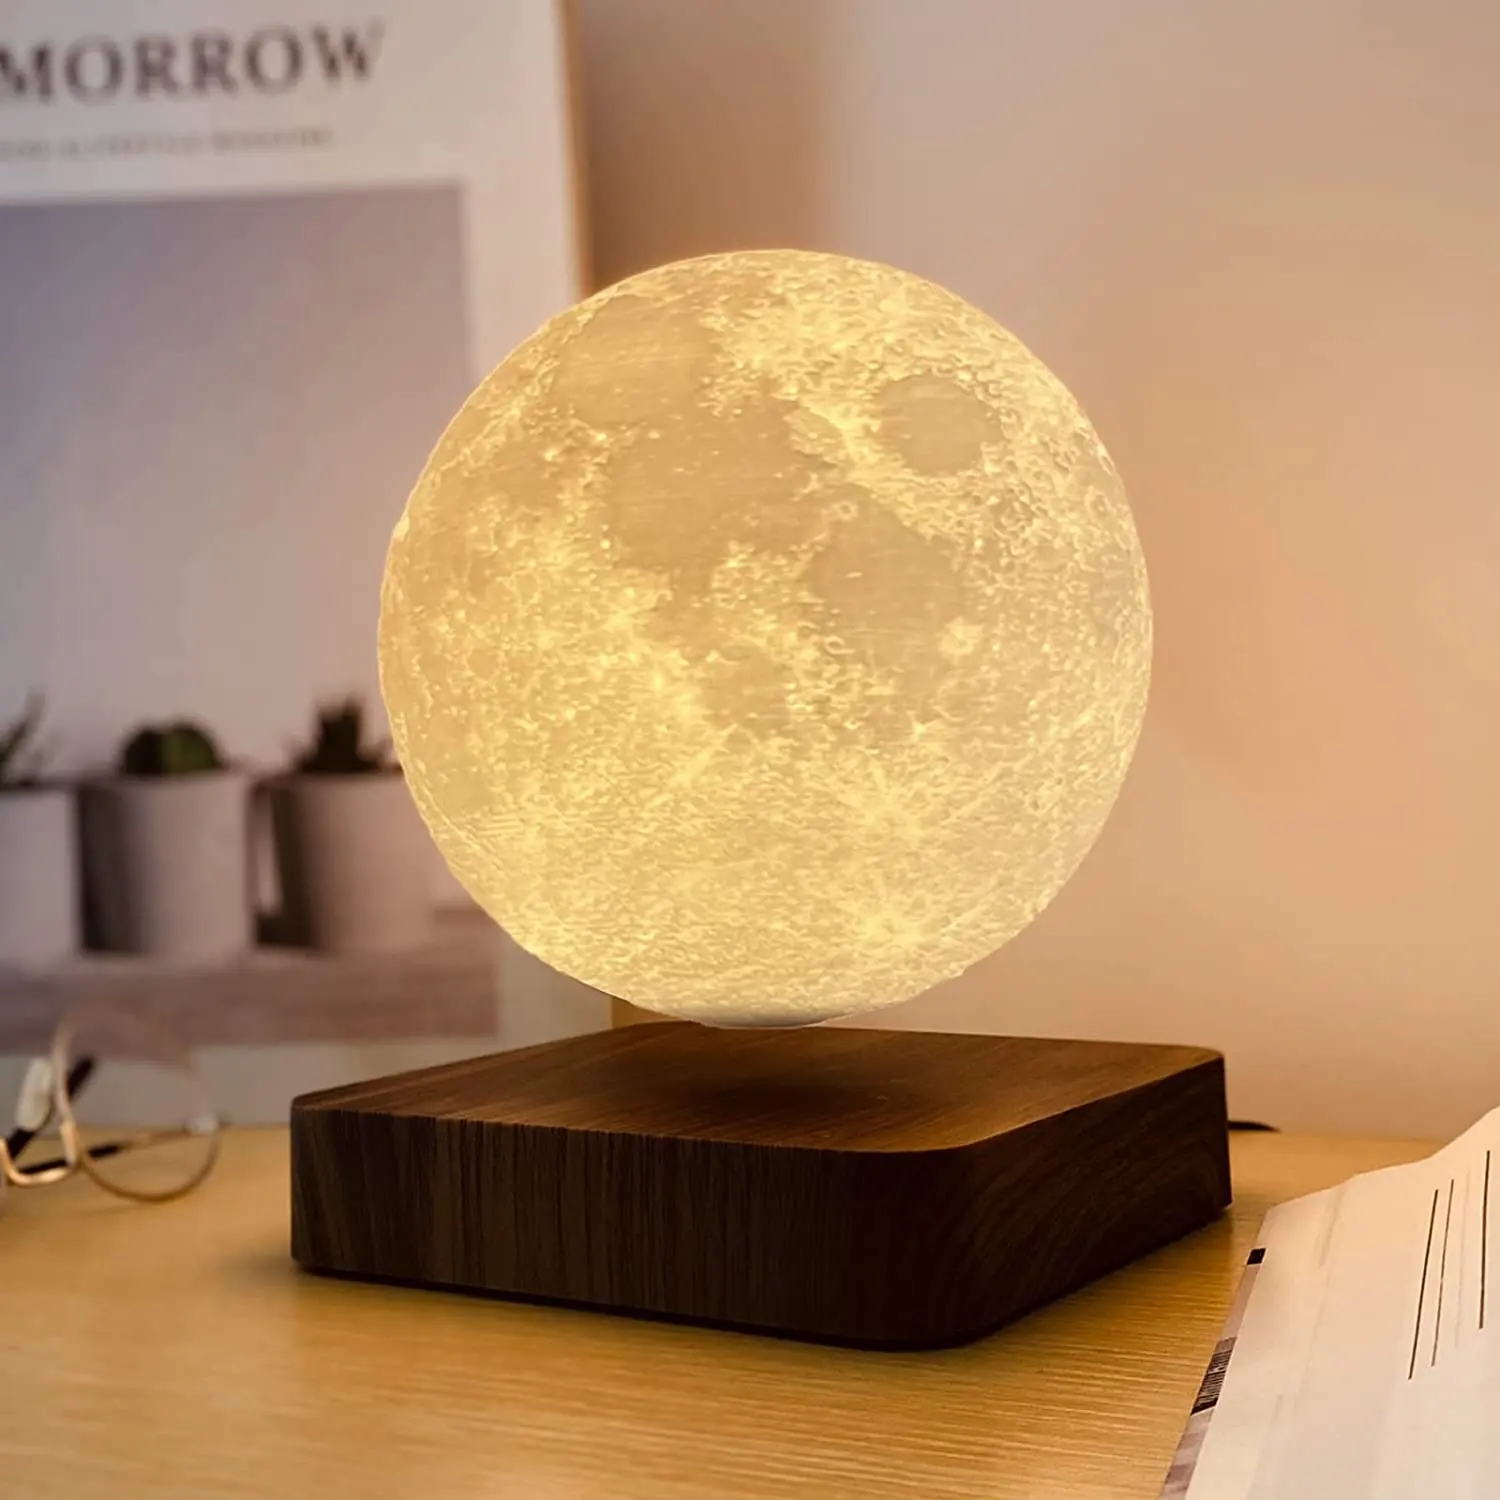 Lampu Bulan Luna Levitasi Magnetik Baru untuk Hadiah Bisnis Kustom Barang Laris Amazon